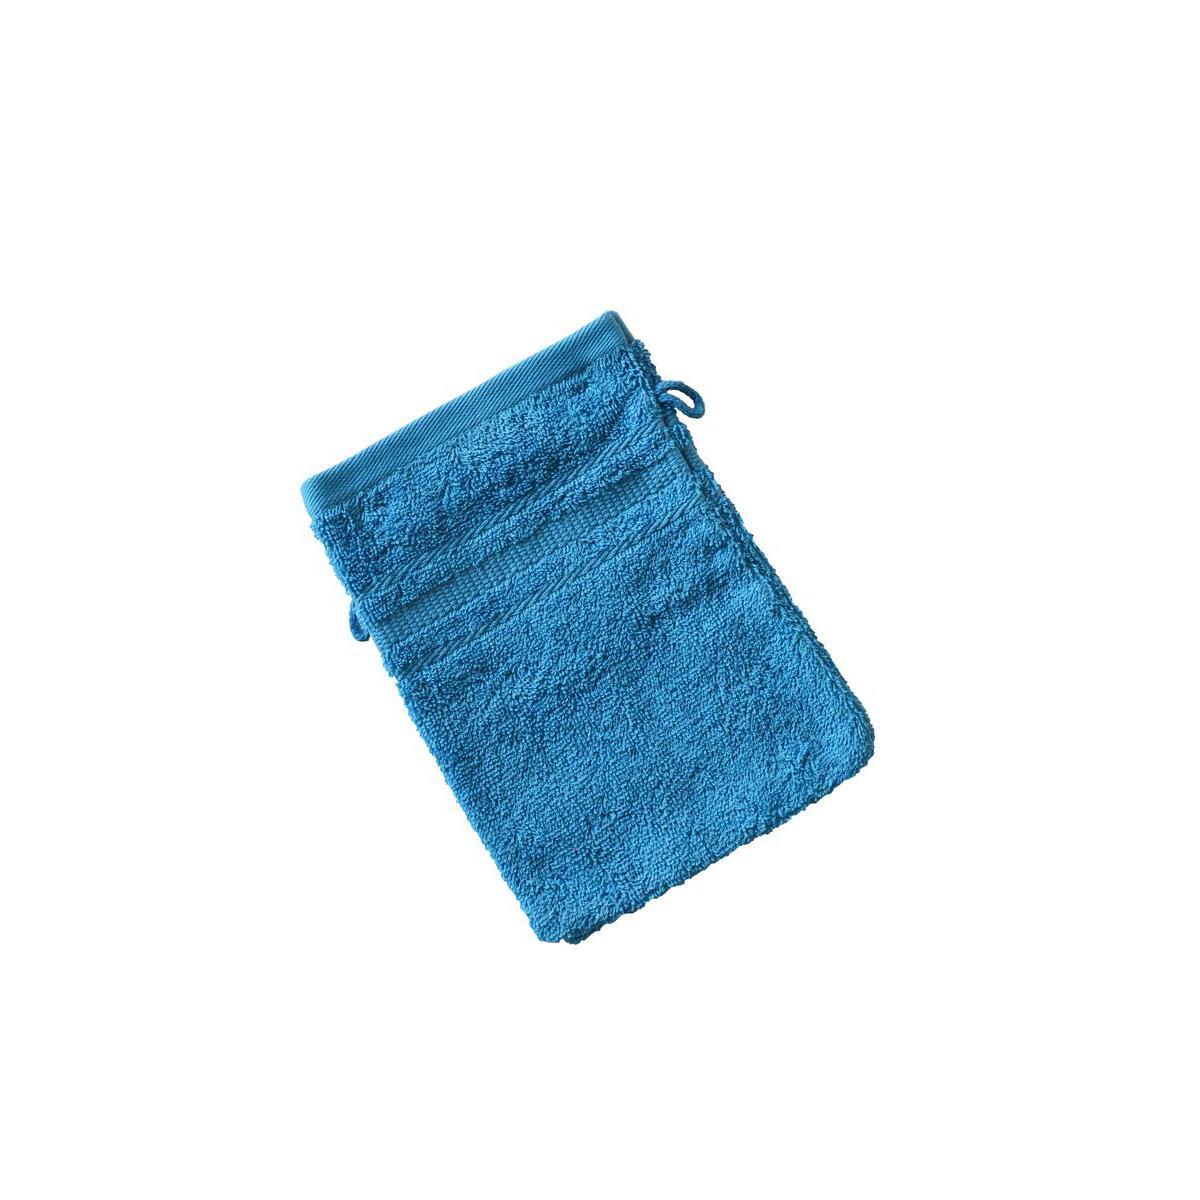 2 gants de toilette éponge - 100% coton 450gr/m2 - 15 x 21 cm - Bleu turquoise